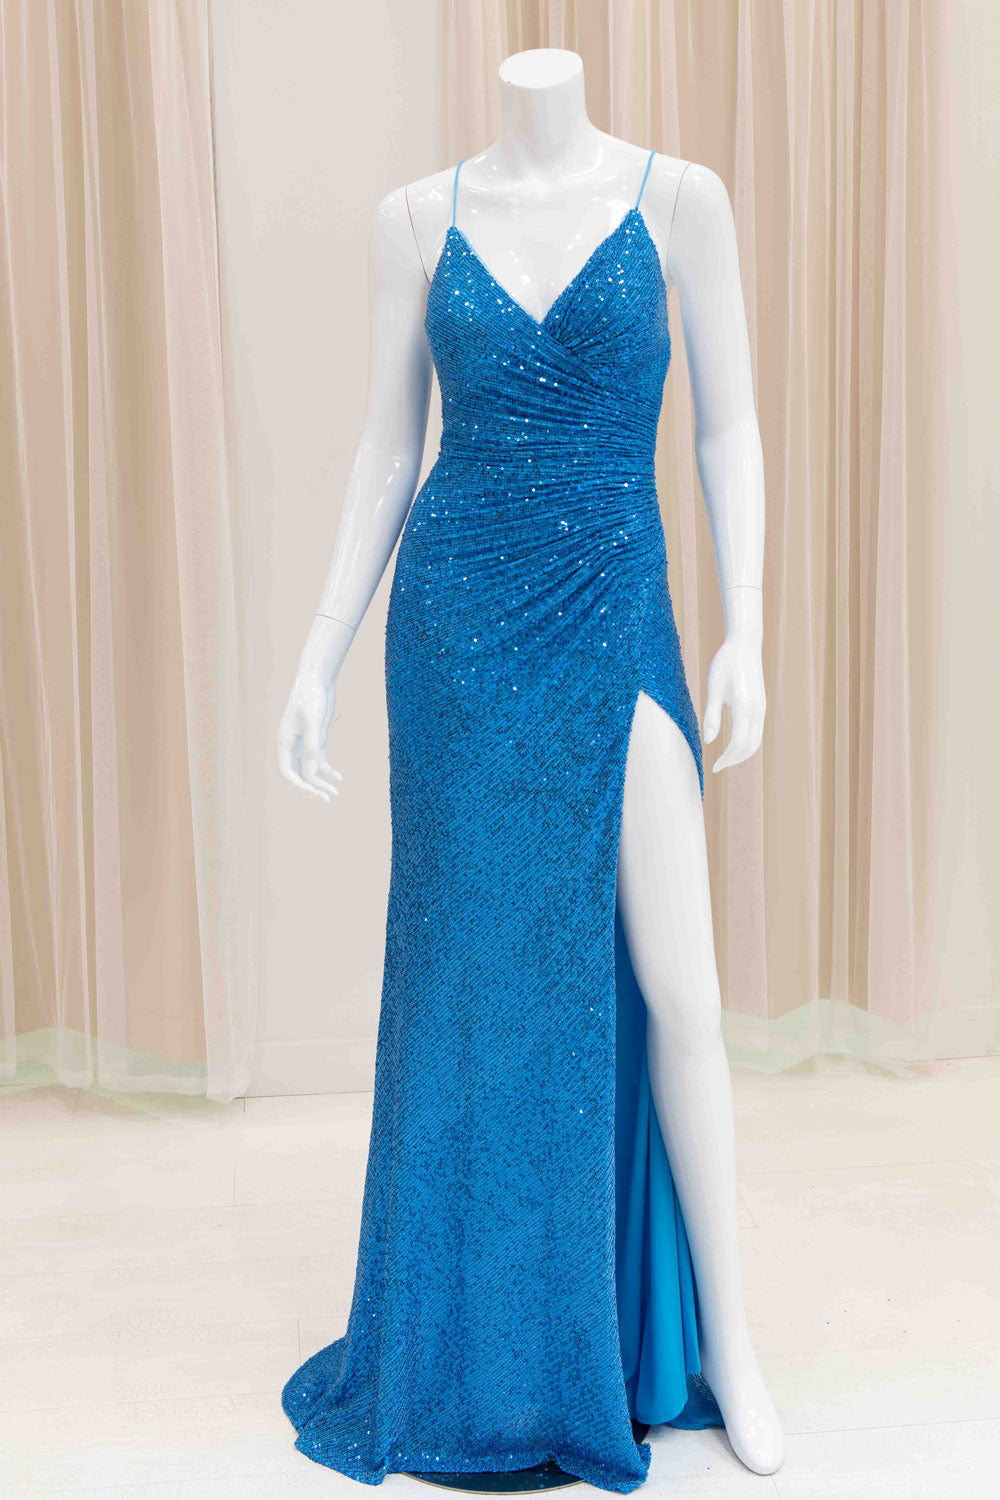 Jaida Sequin Tie Back Evening Dress in Aqua Blue